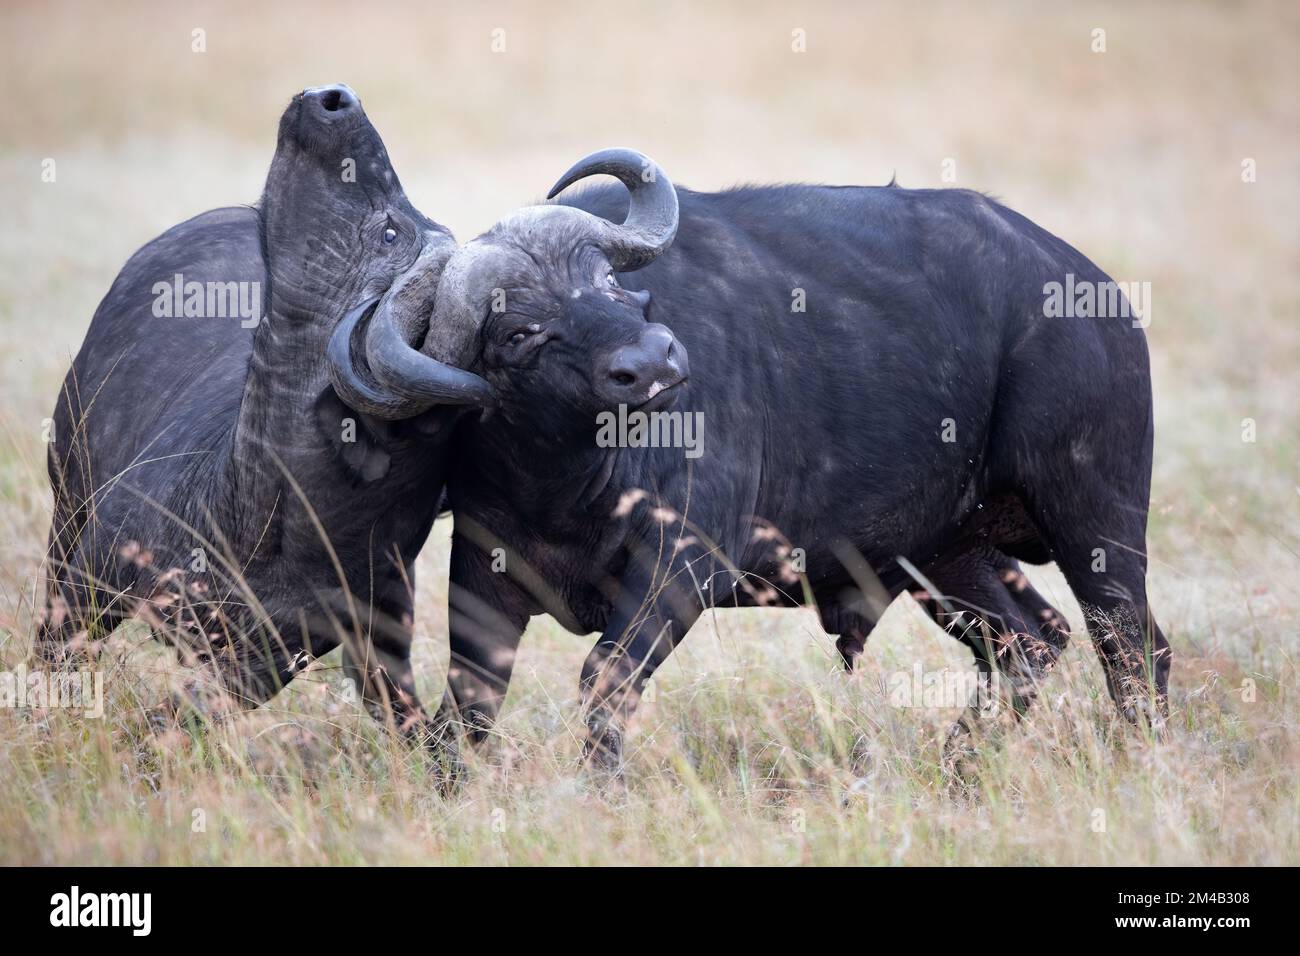 Zwei afrikanische Büffel messen ihre Stärke, Hörner sind verschlossen und schwer zu trennen, intensiver Kampf, Masai Mara, Olare Motorogi Conservancy, Kenia. Stockfoto